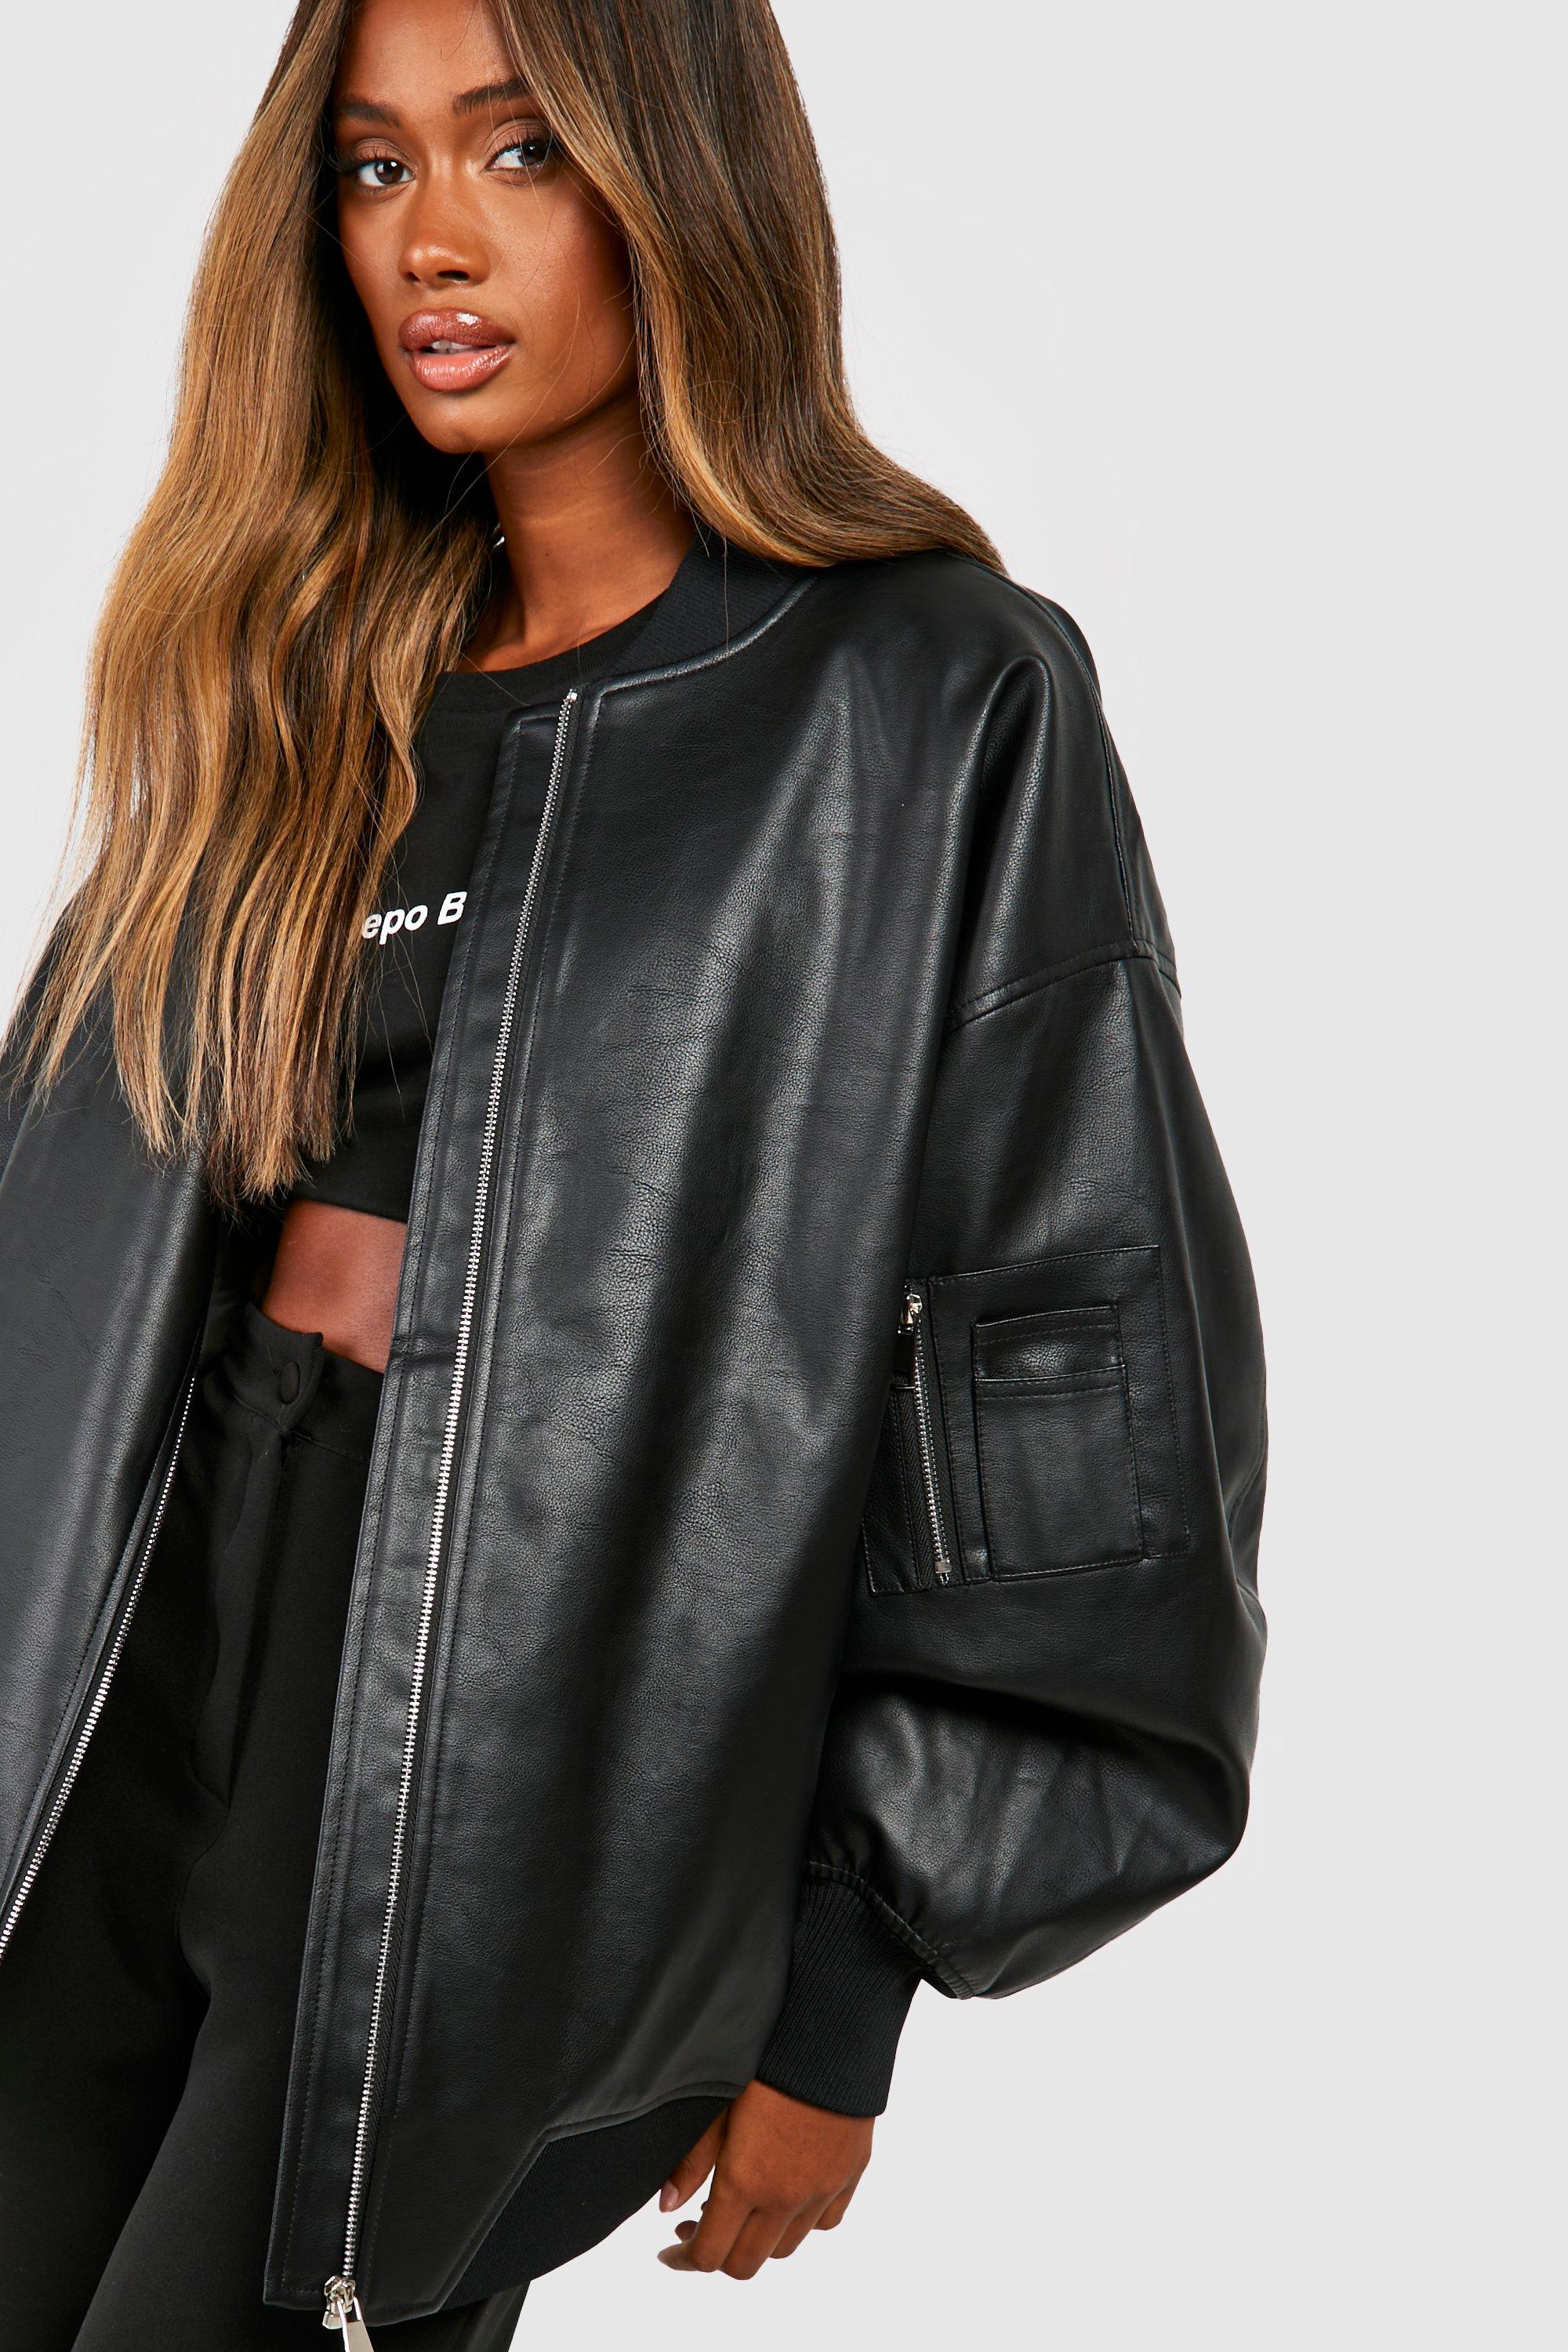 womens oversized faux leather bomber jacket - black - 14, black